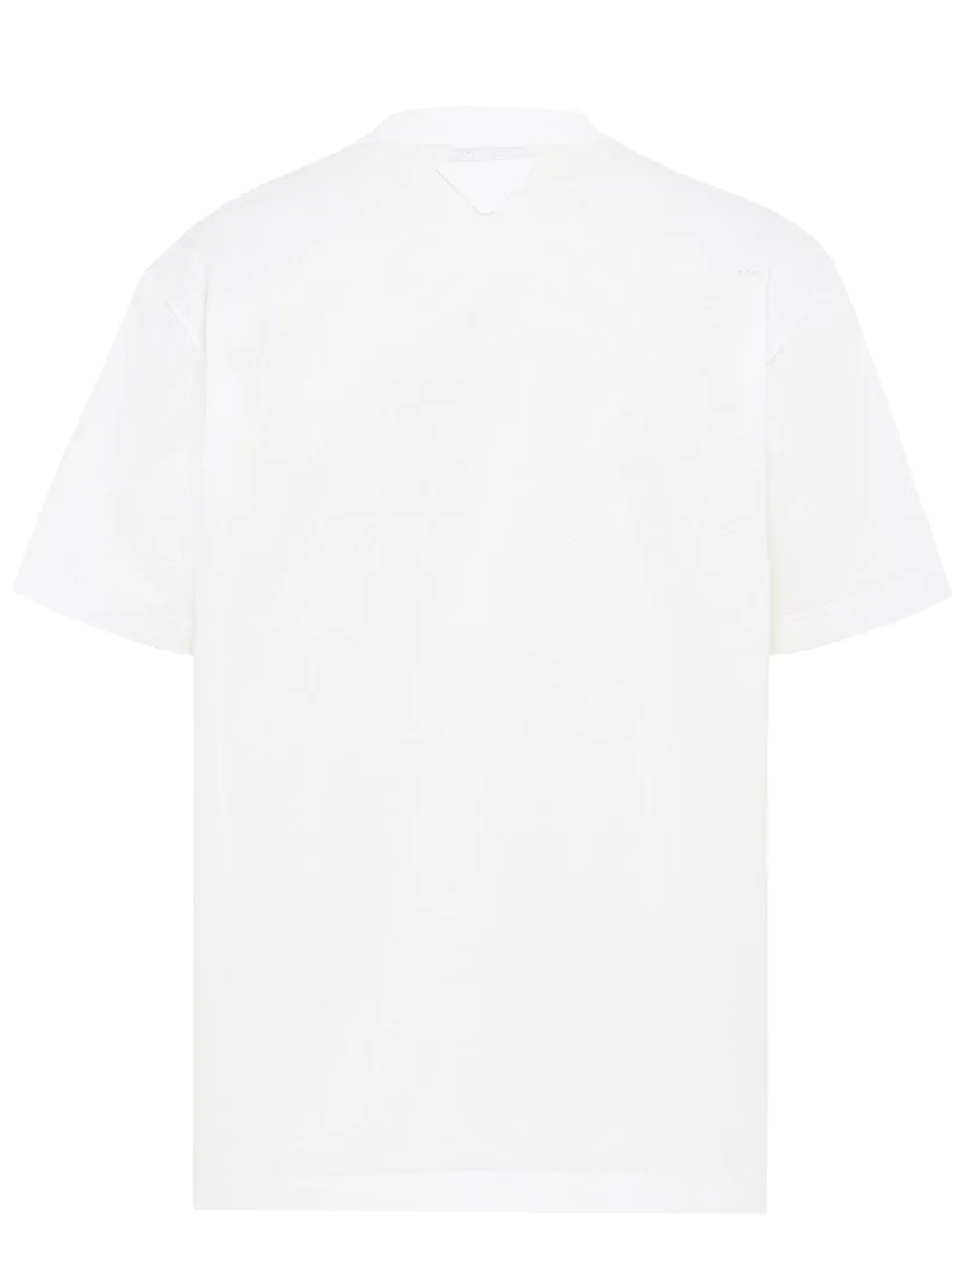 Imagem de: Camiseta Prada Branca com Estampa